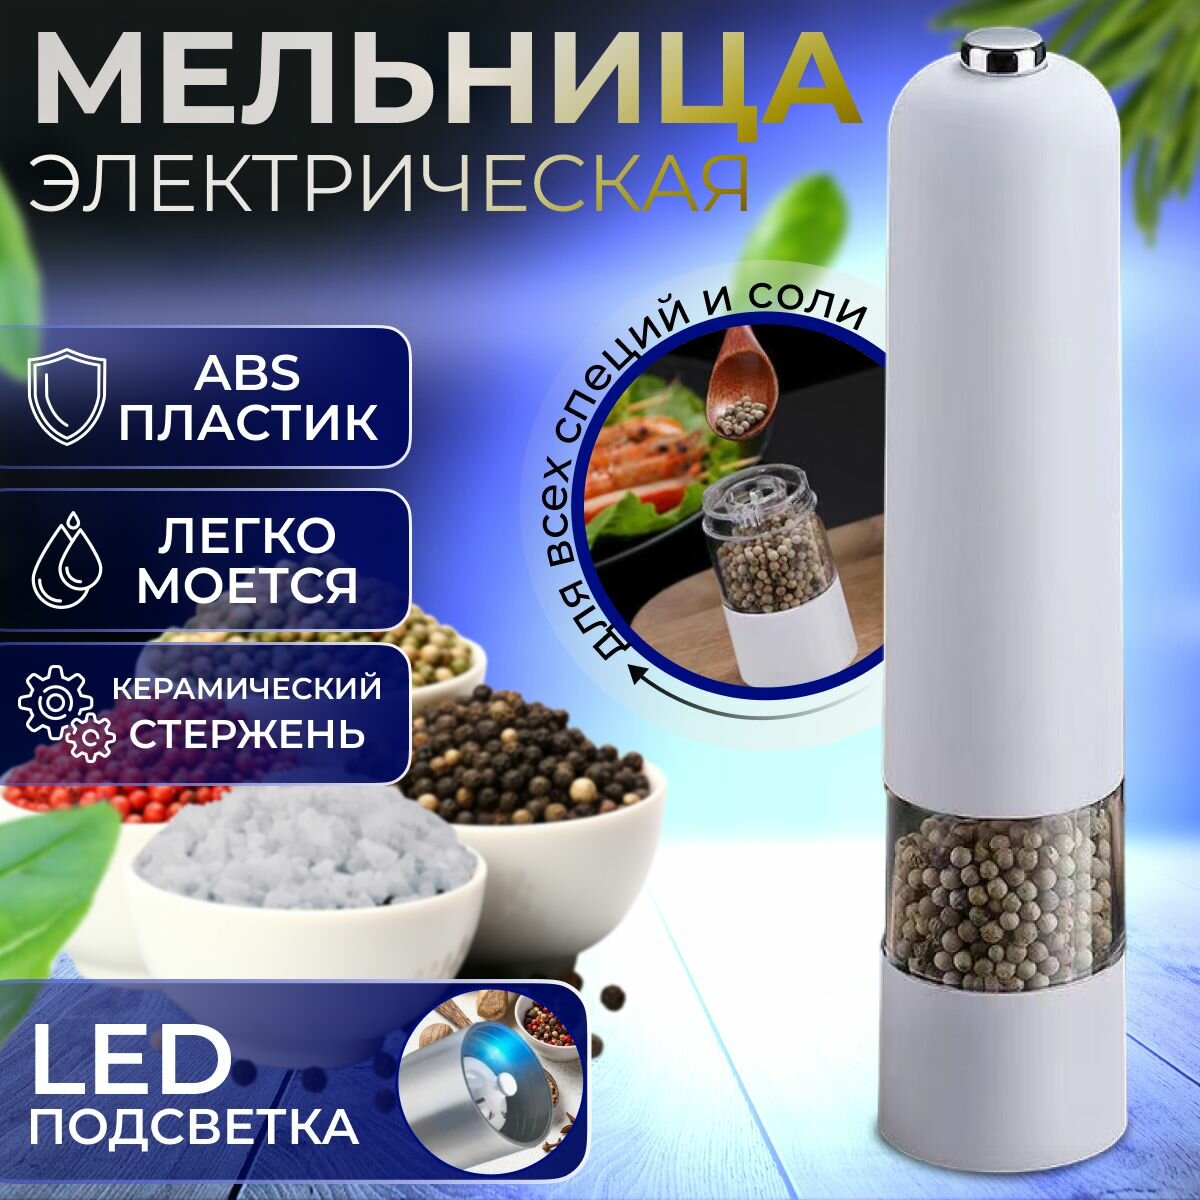 Мельница для специй электрическая с LED подсветкой, с автоматическим помолом, для перца и соли "Meisina". Электромельница металлическая, цвет корпуса белый